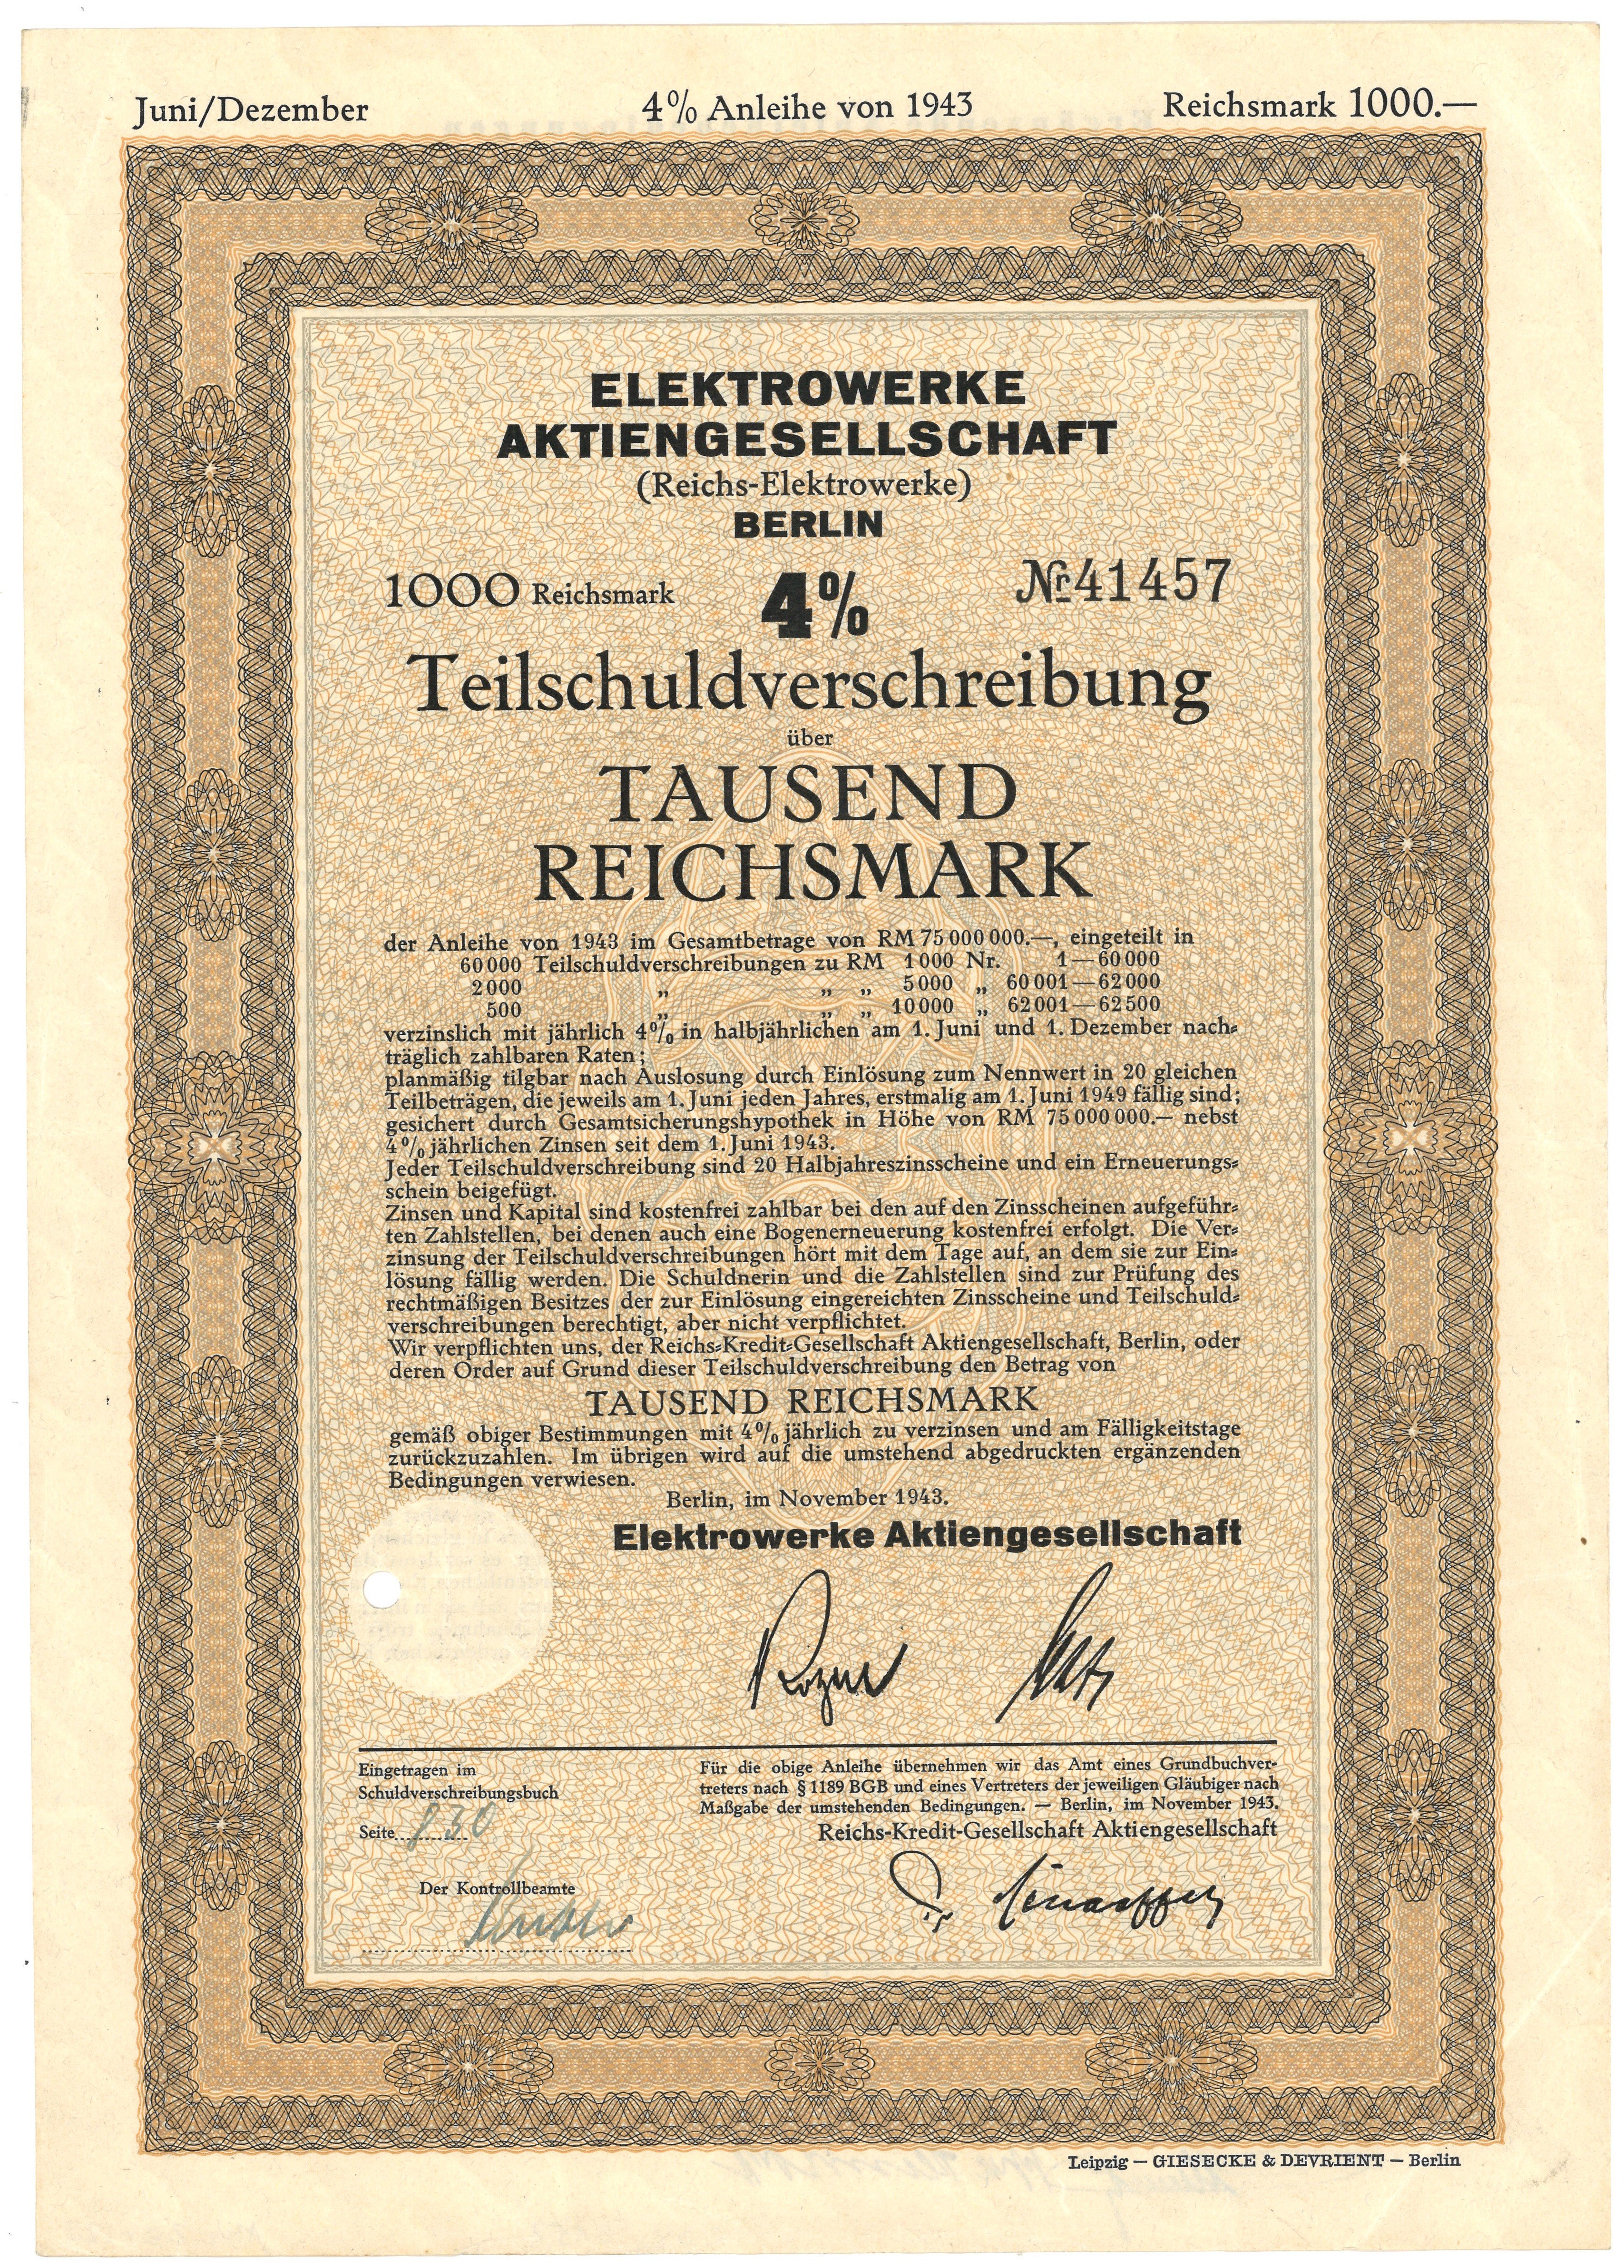 Teilschuldverschreibung der Elektrowerke AG (Reichs-Elektrowerke) Berlin (1943) (Landesgeschichtliche Vereinigung für die Mark Brandenburg e.V. CC BY)